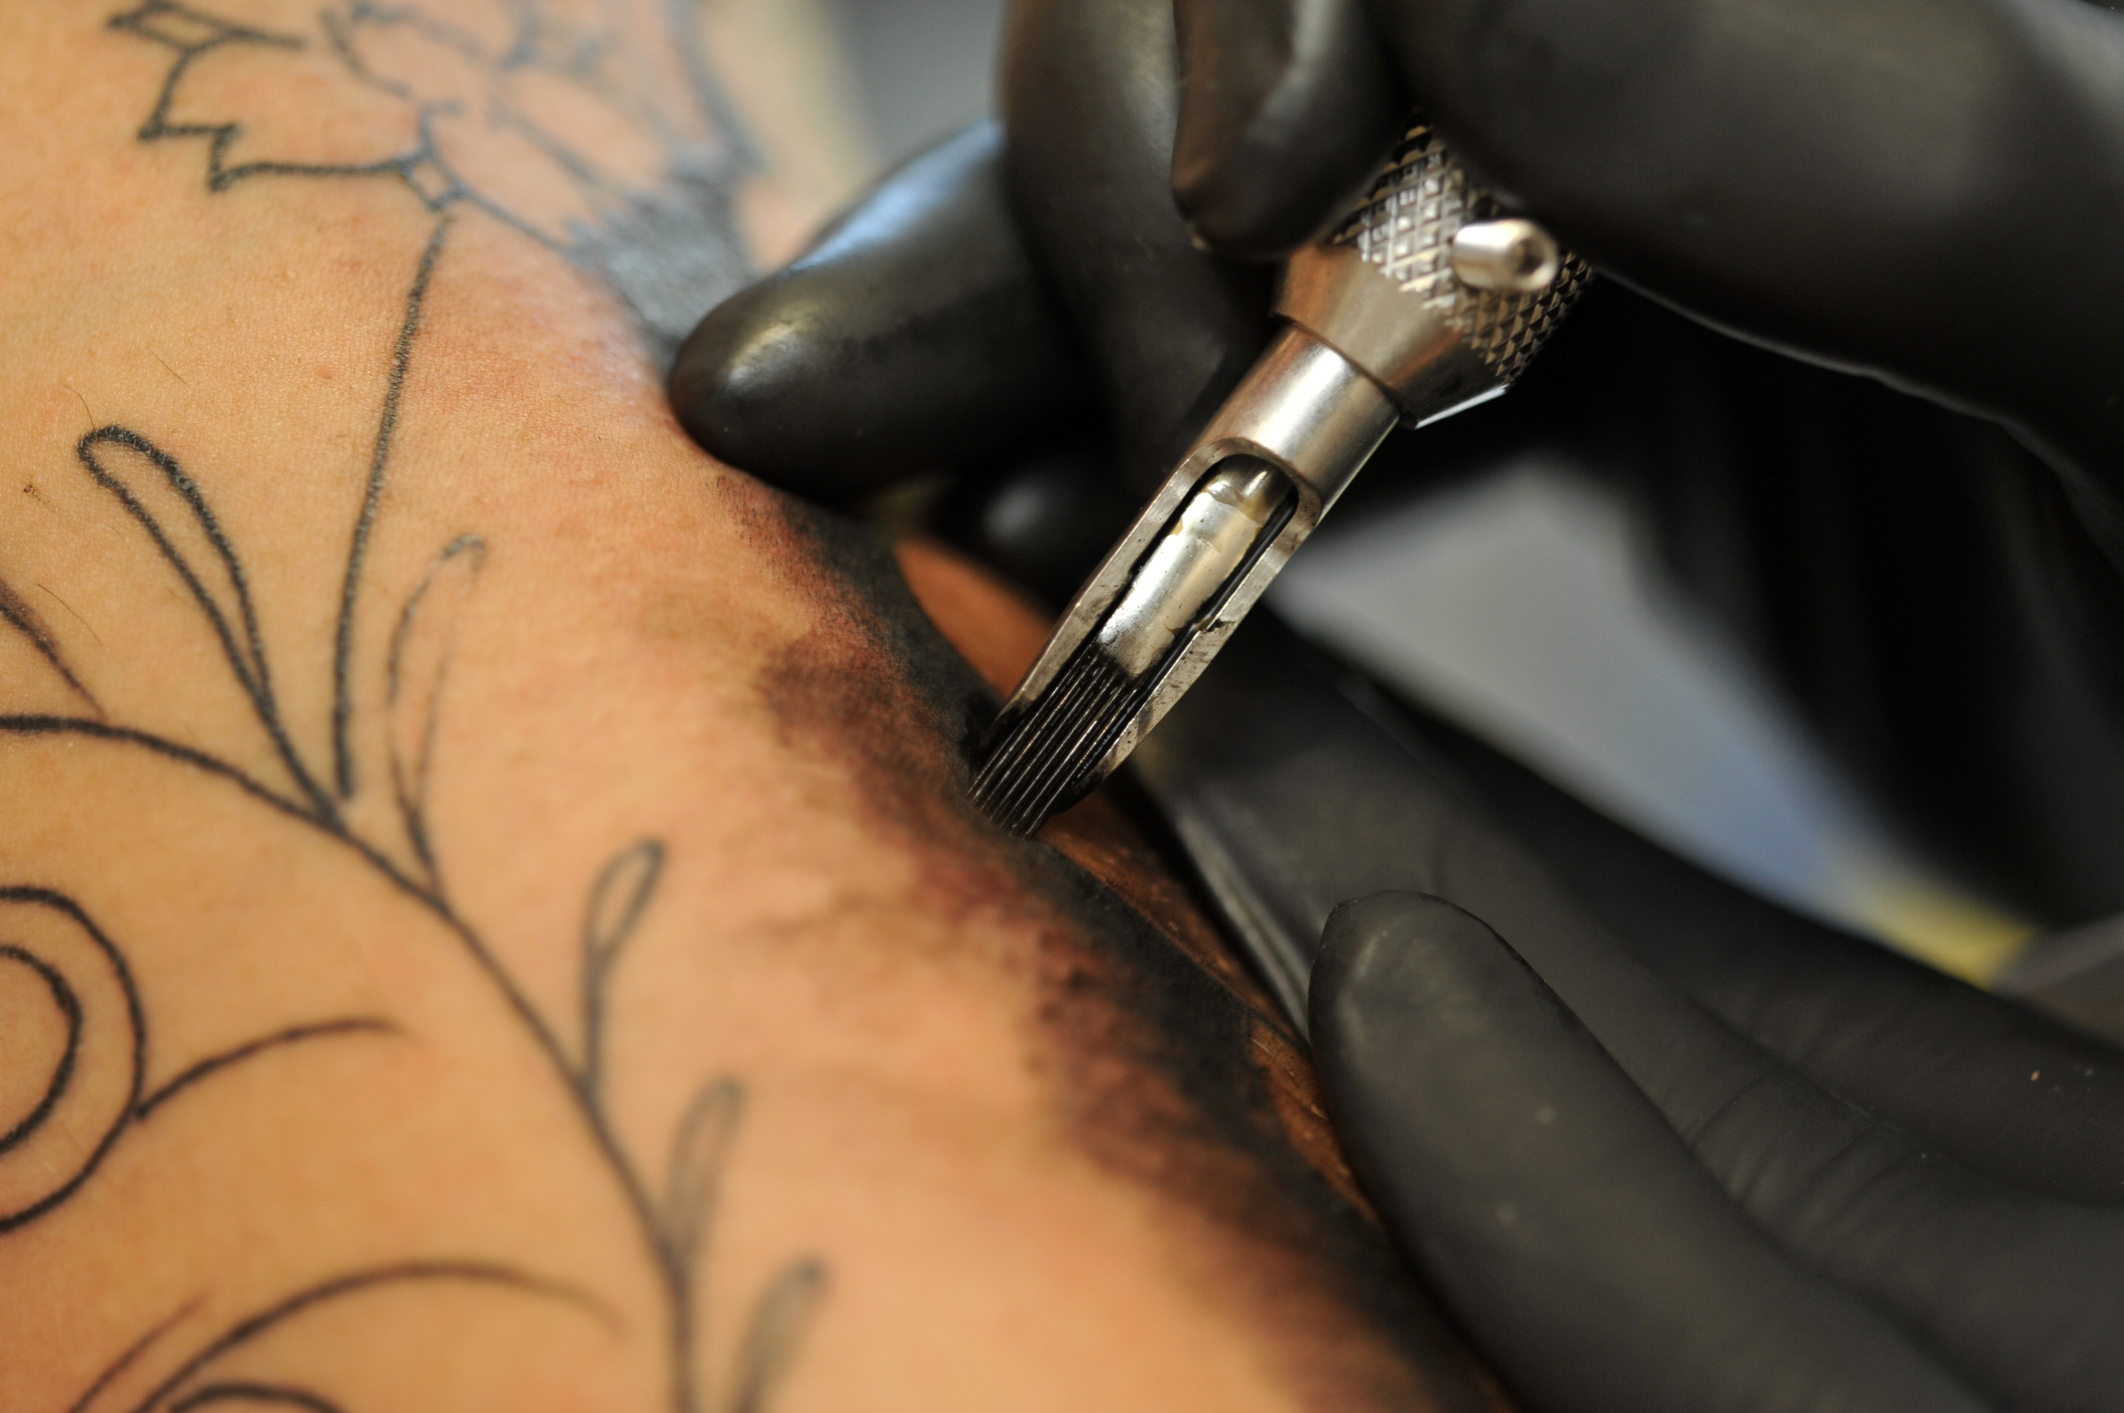 Tatuaggio: come si cura i primi giorni e nel tempo